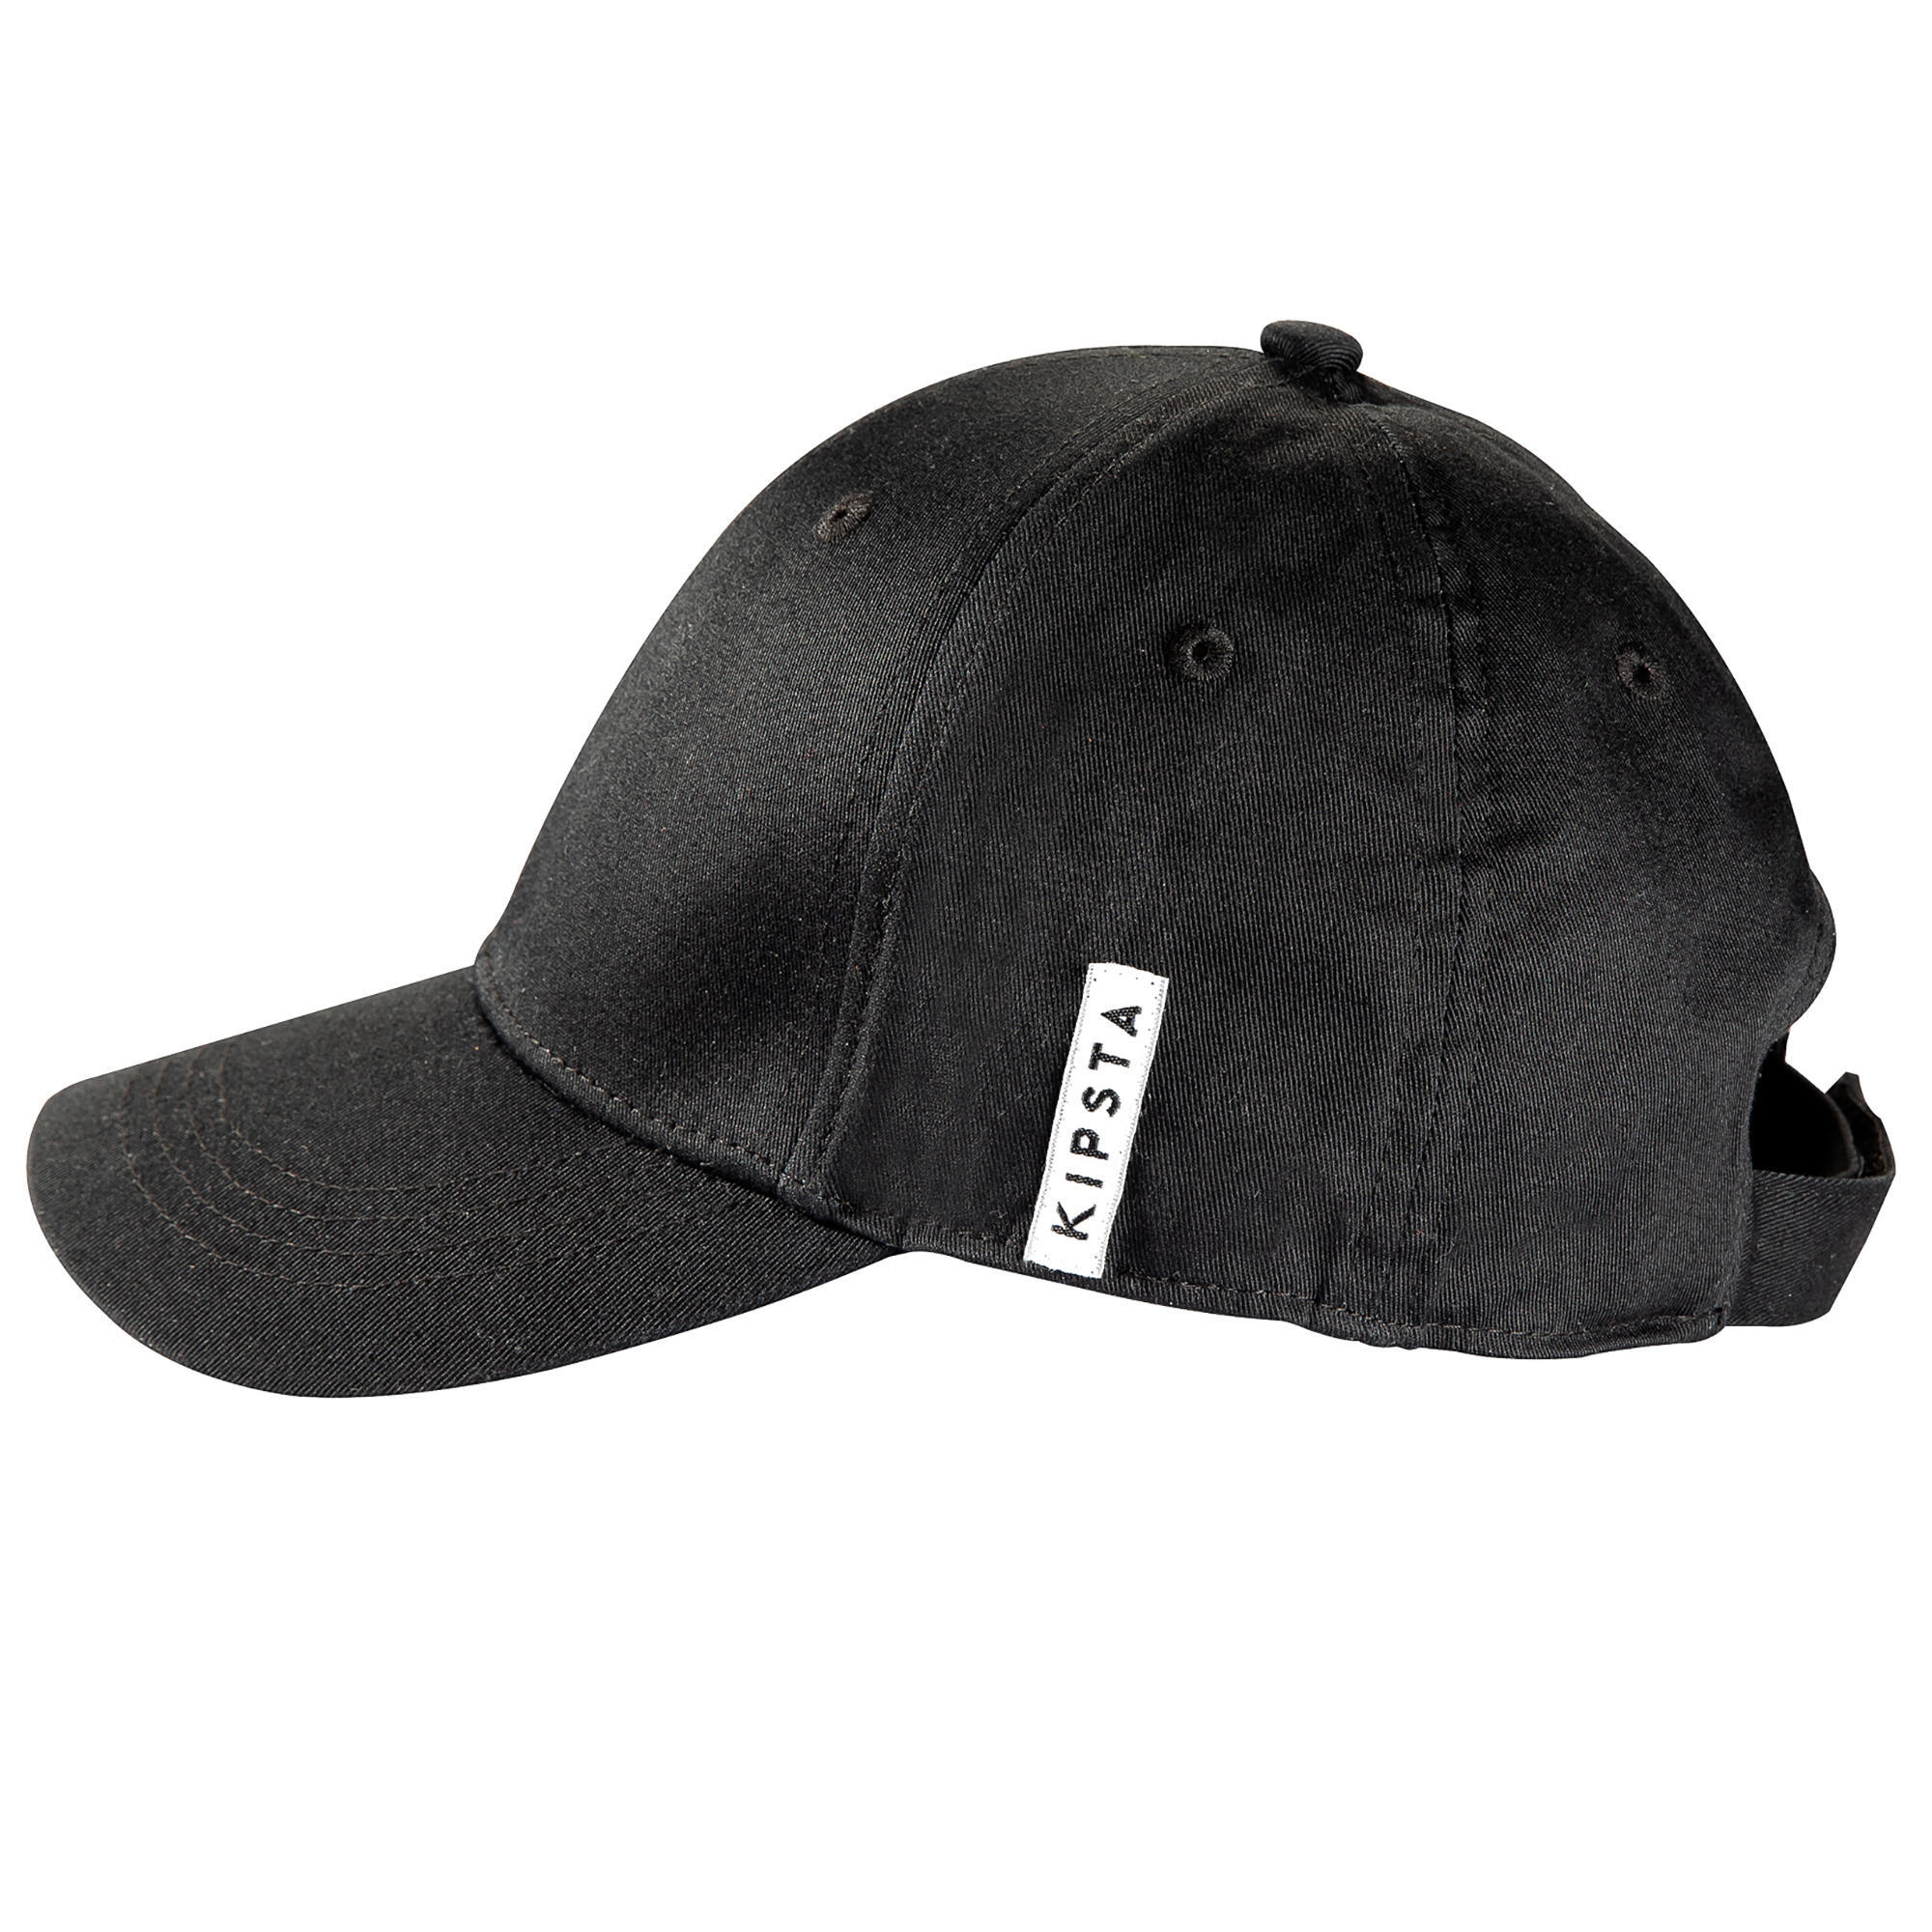 BASEBALL CAP BA500 Black JR 2/8